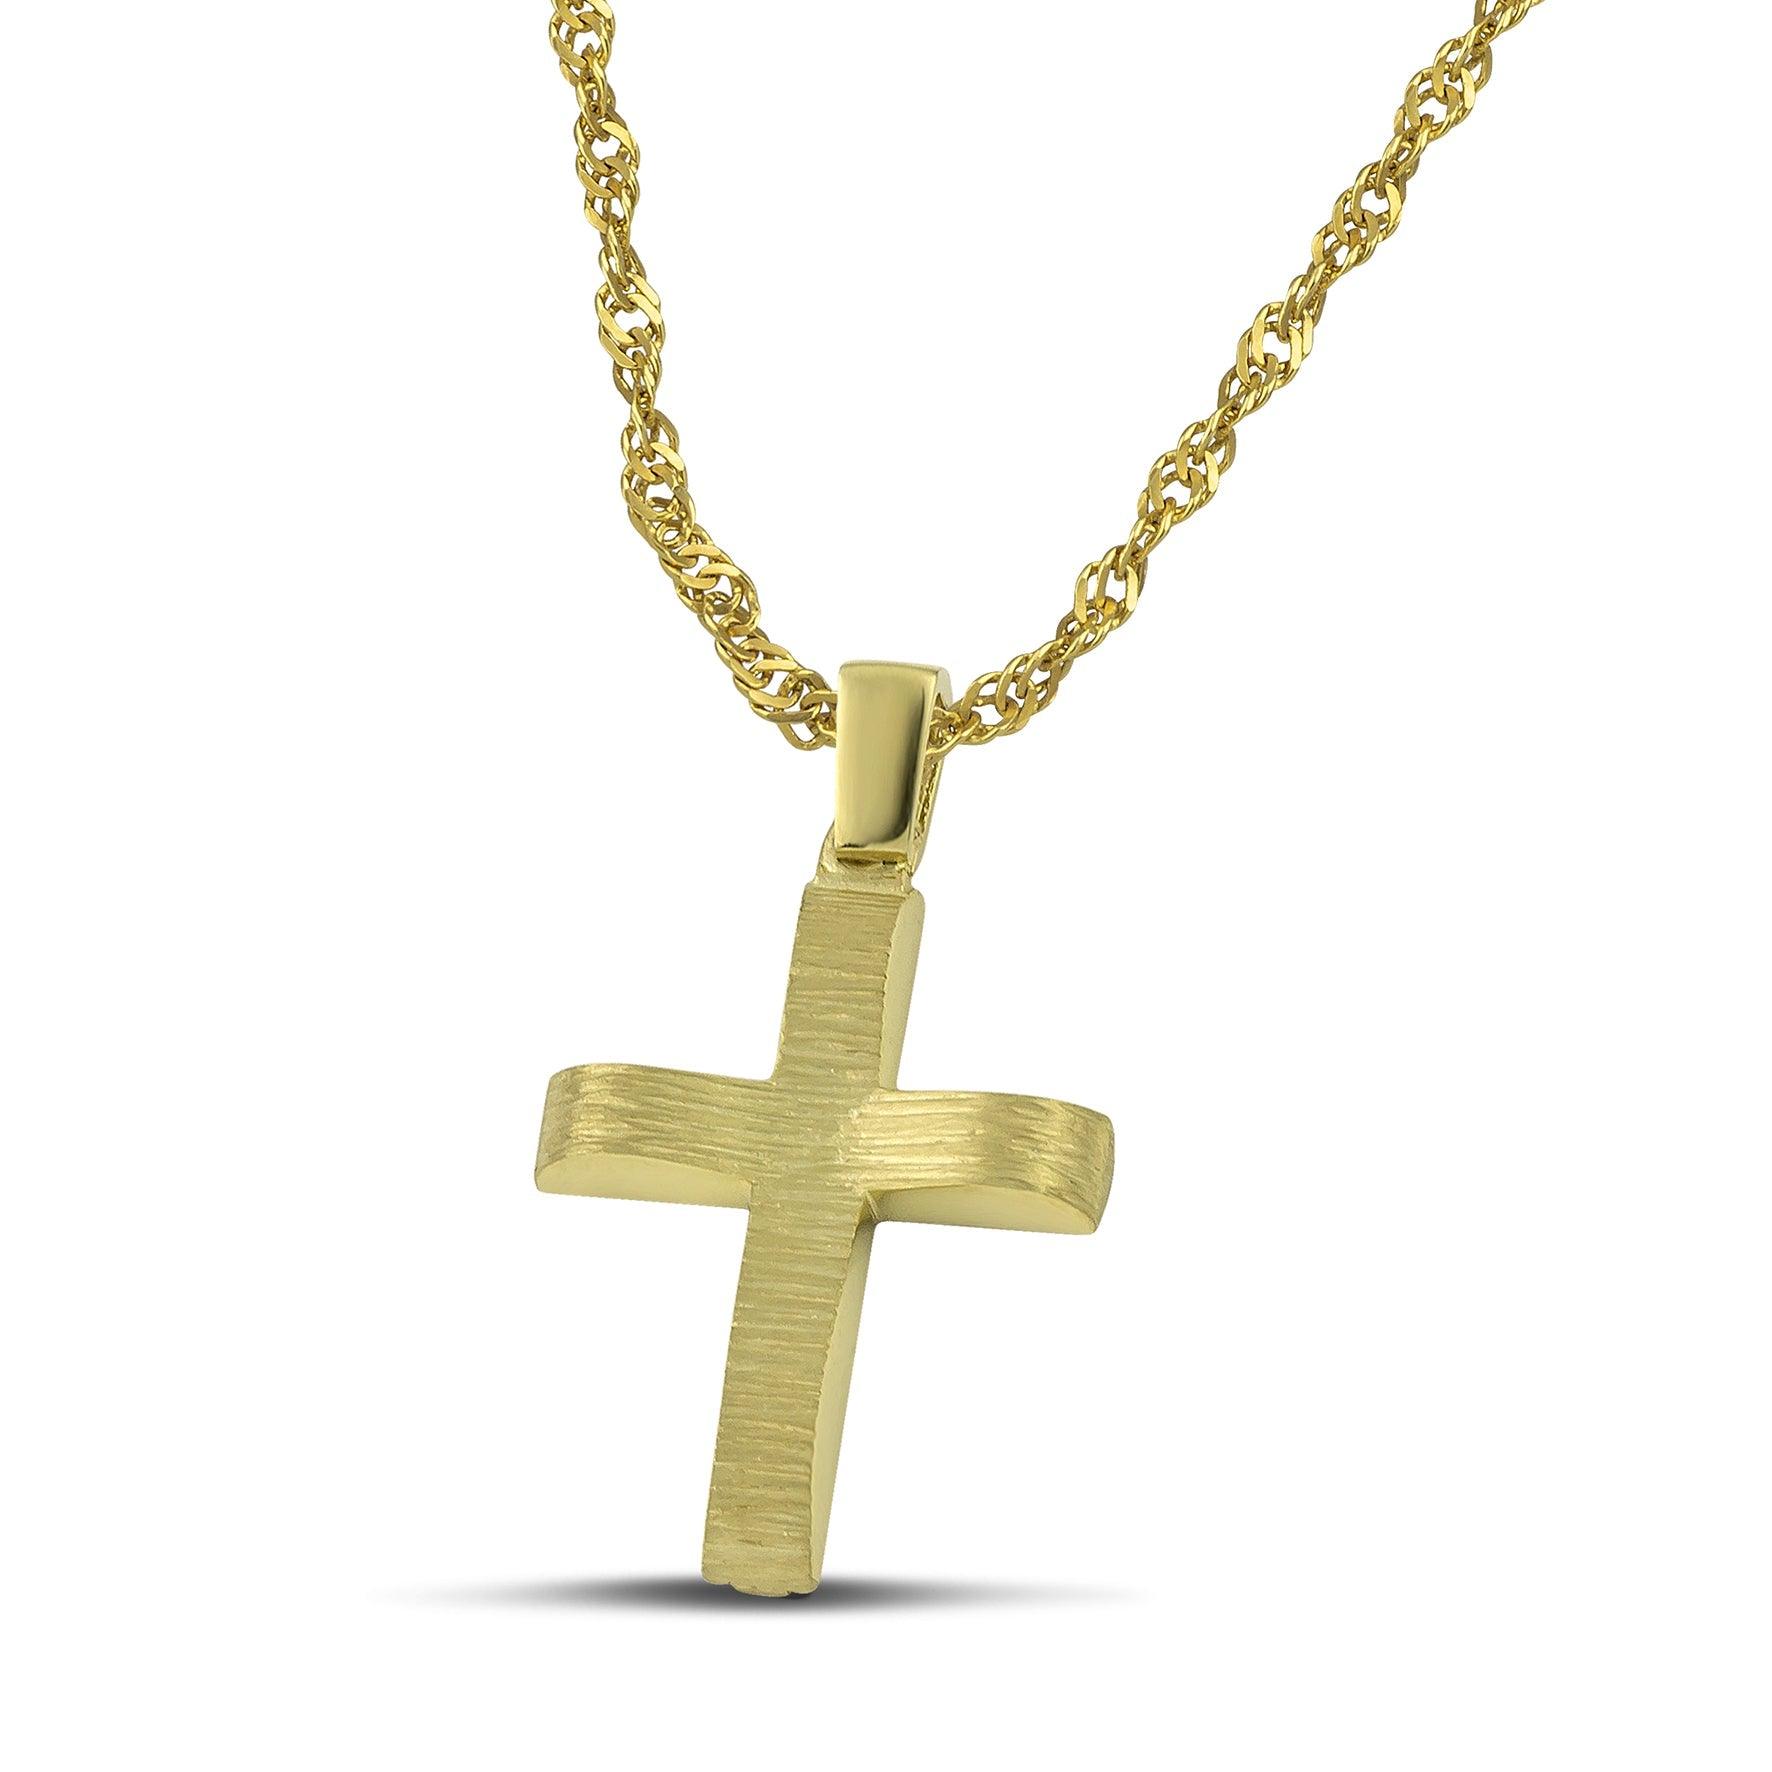 Μοντέρνος βαπτιστικός σταυρός χρυσός Κ14 για αγόρι, διπλής όψης, σαγρέ, σε χοντρή αλυσίδα. 